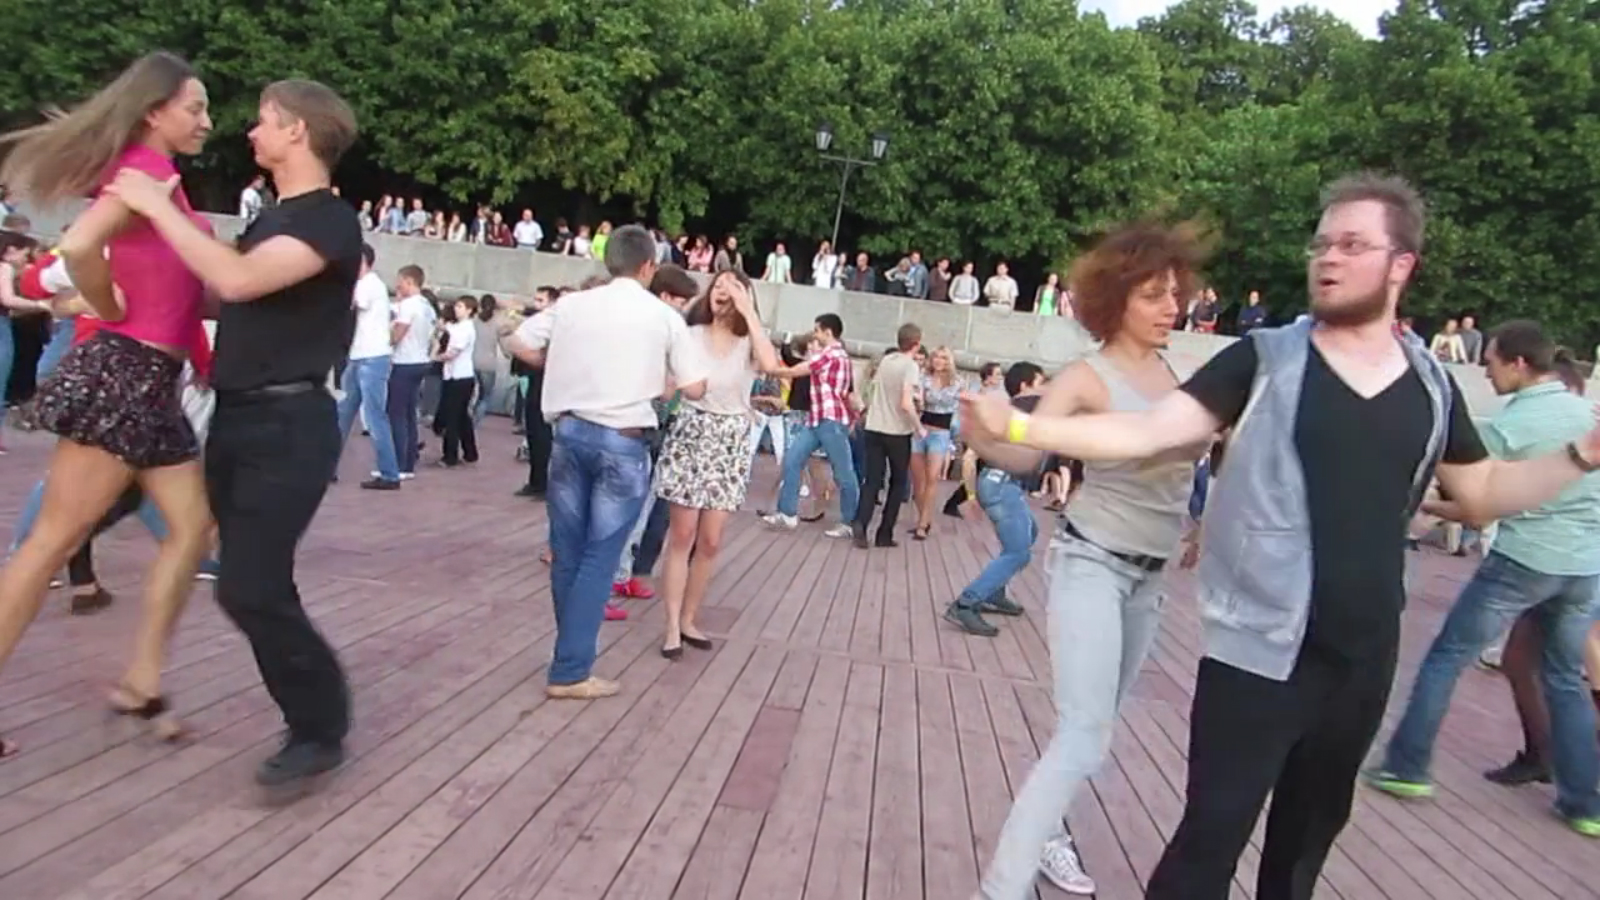 Парк горького танцы видео